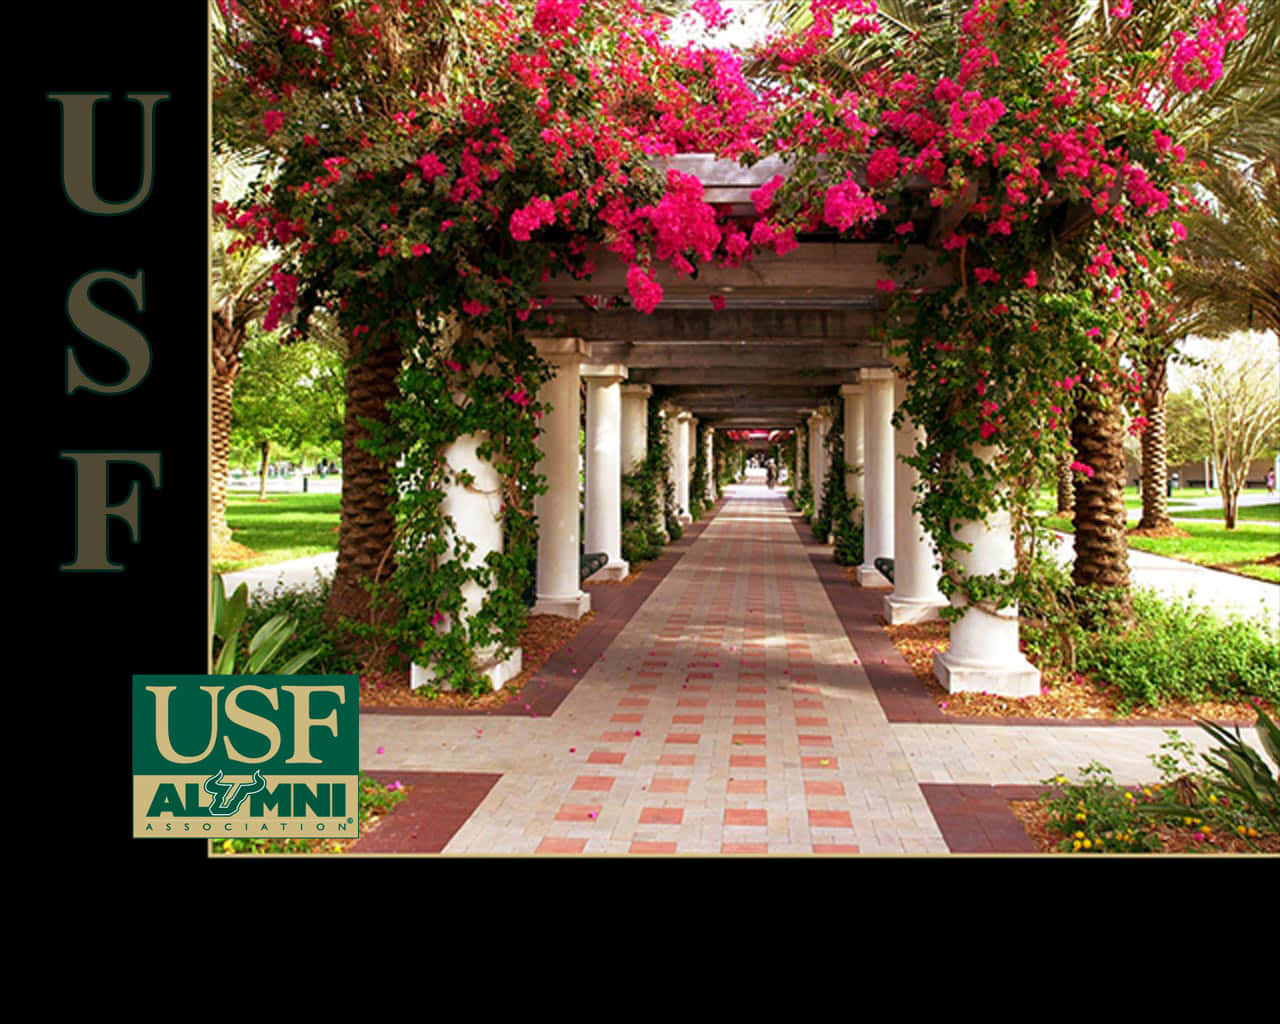 Universitätvon Südflorida Blumen Alumni Wallpaper